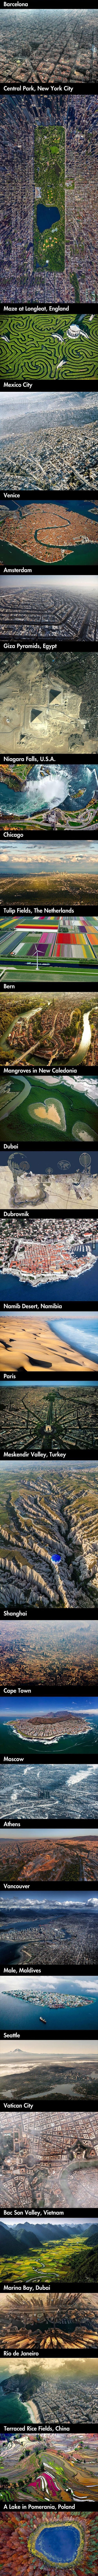 Iz ptičje perspektive: Ovako izgledaju različiti gradovi svijeta s visina